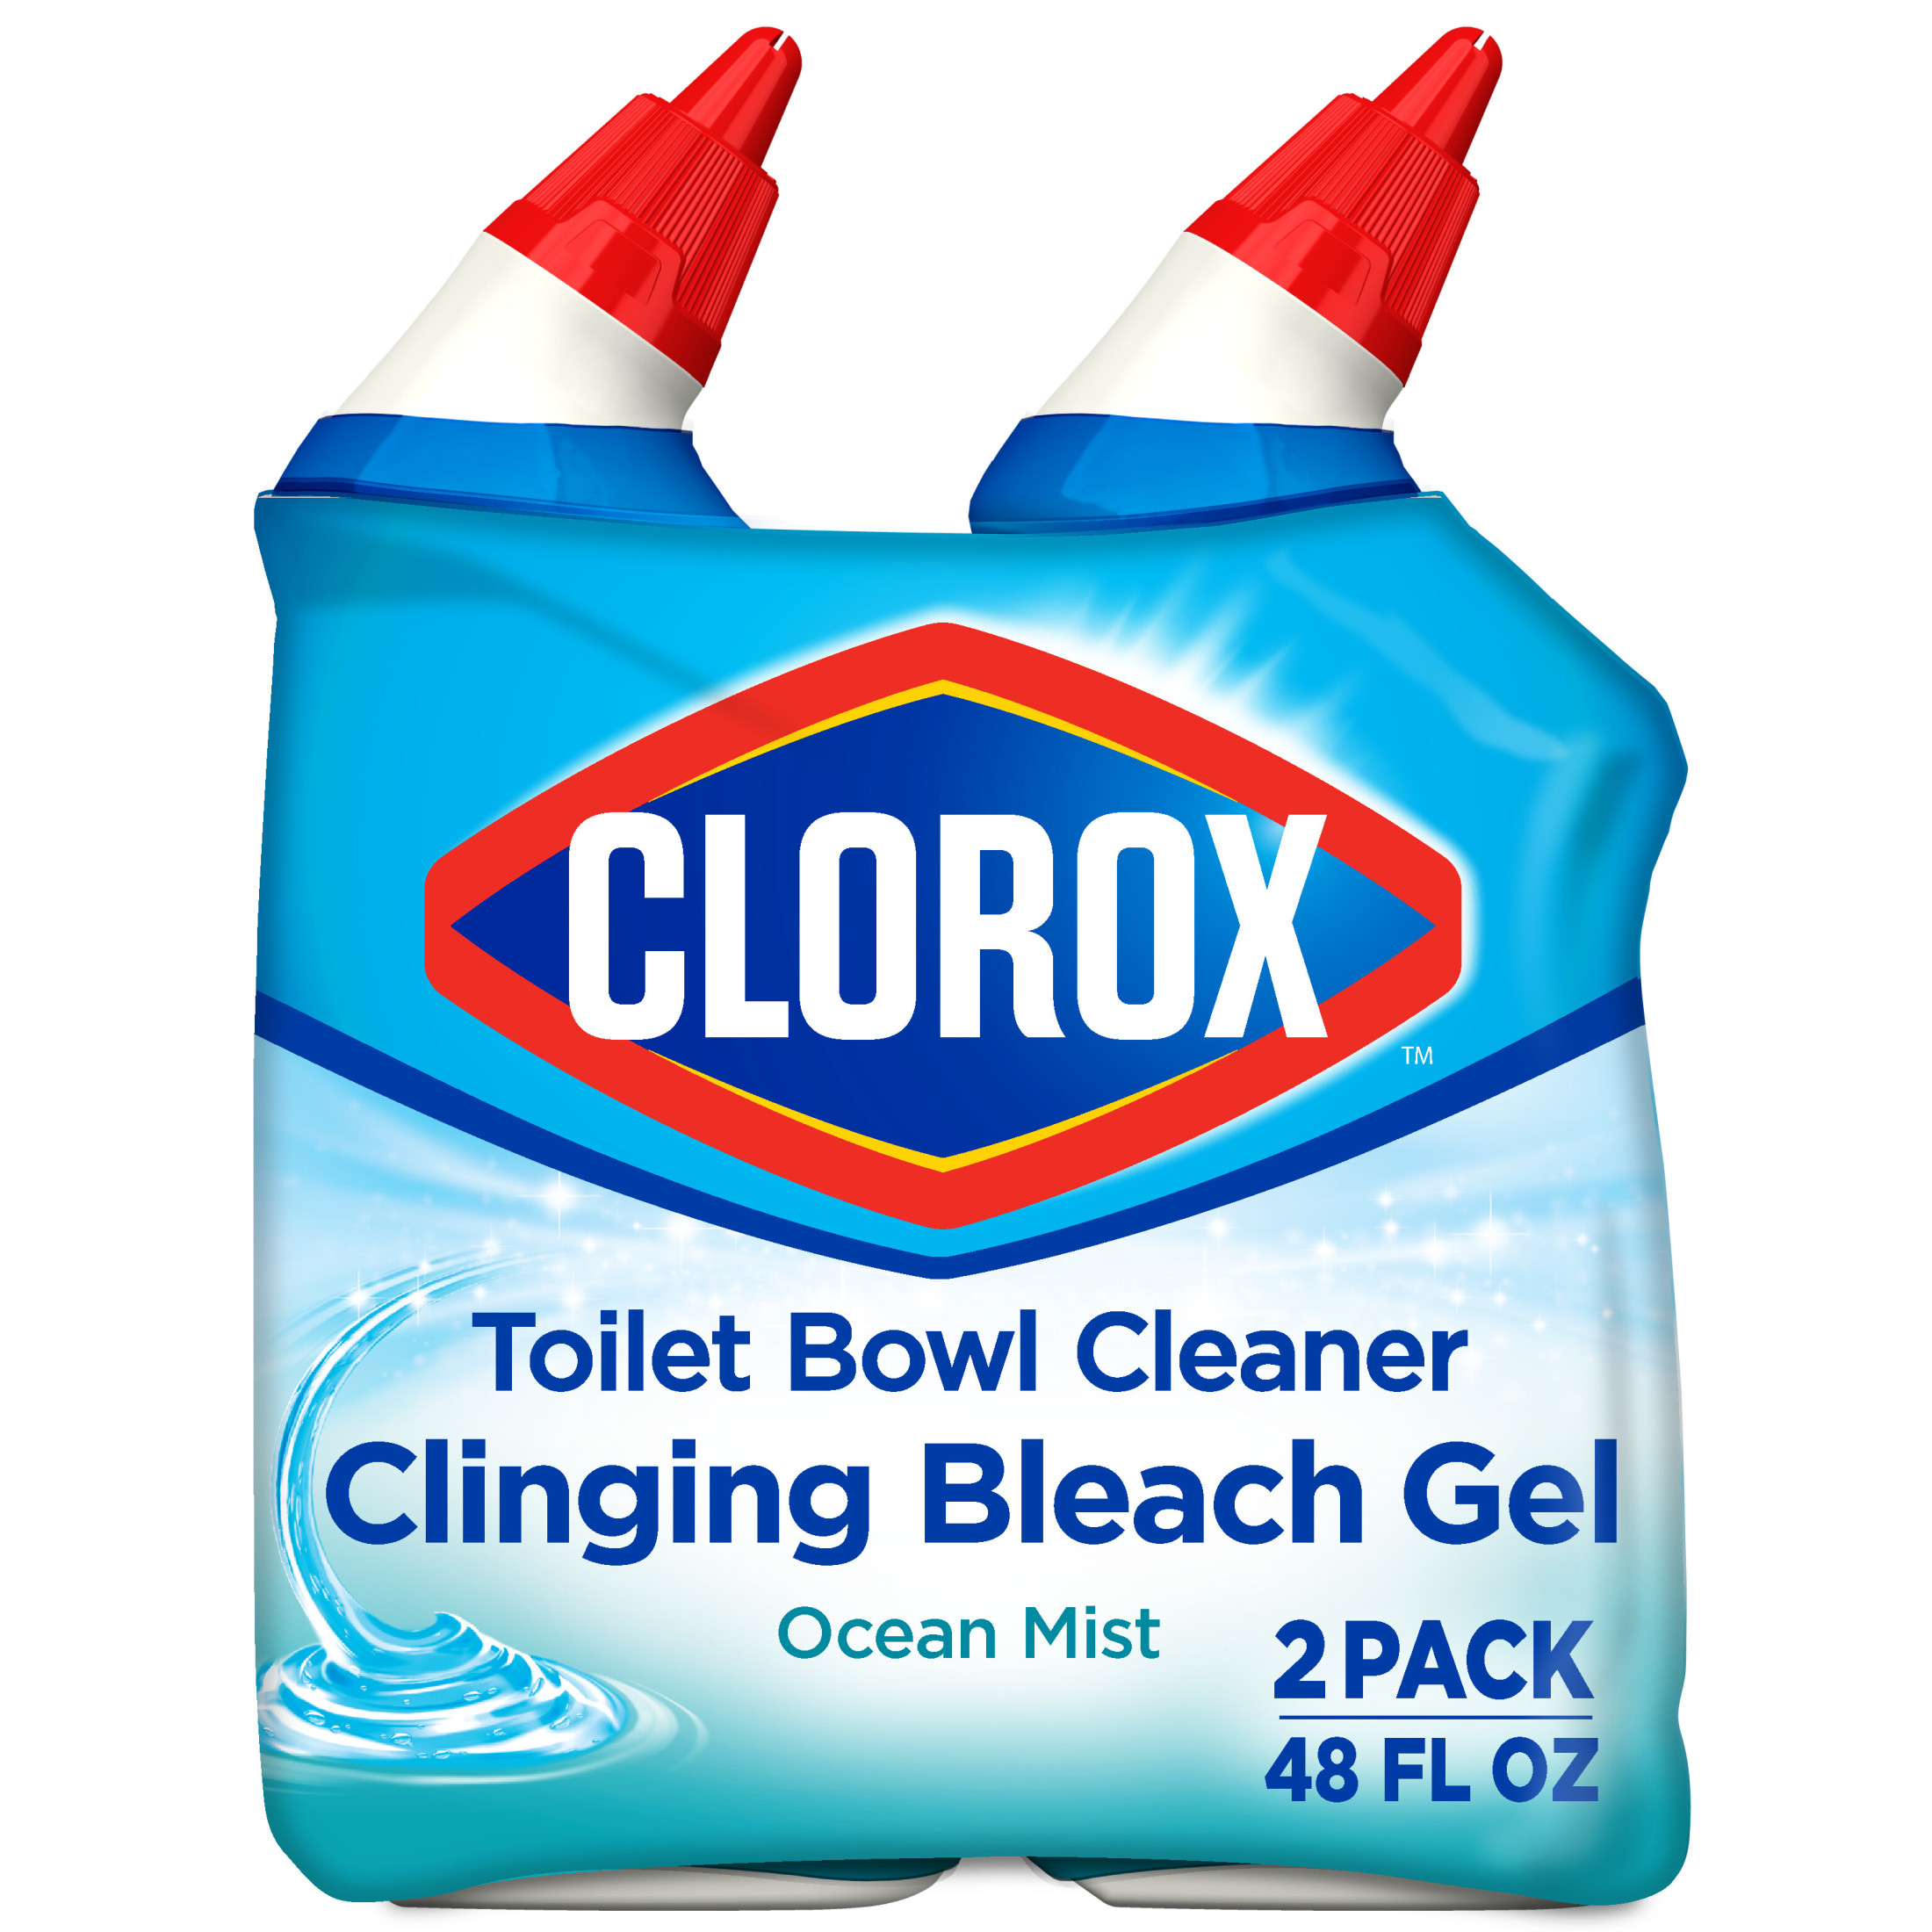 Clorox Toilet Bowl Cleaner Clinging Bleach Gel, Ocean Mist, 24 fl oz, 2 Pack - image 1 of 10